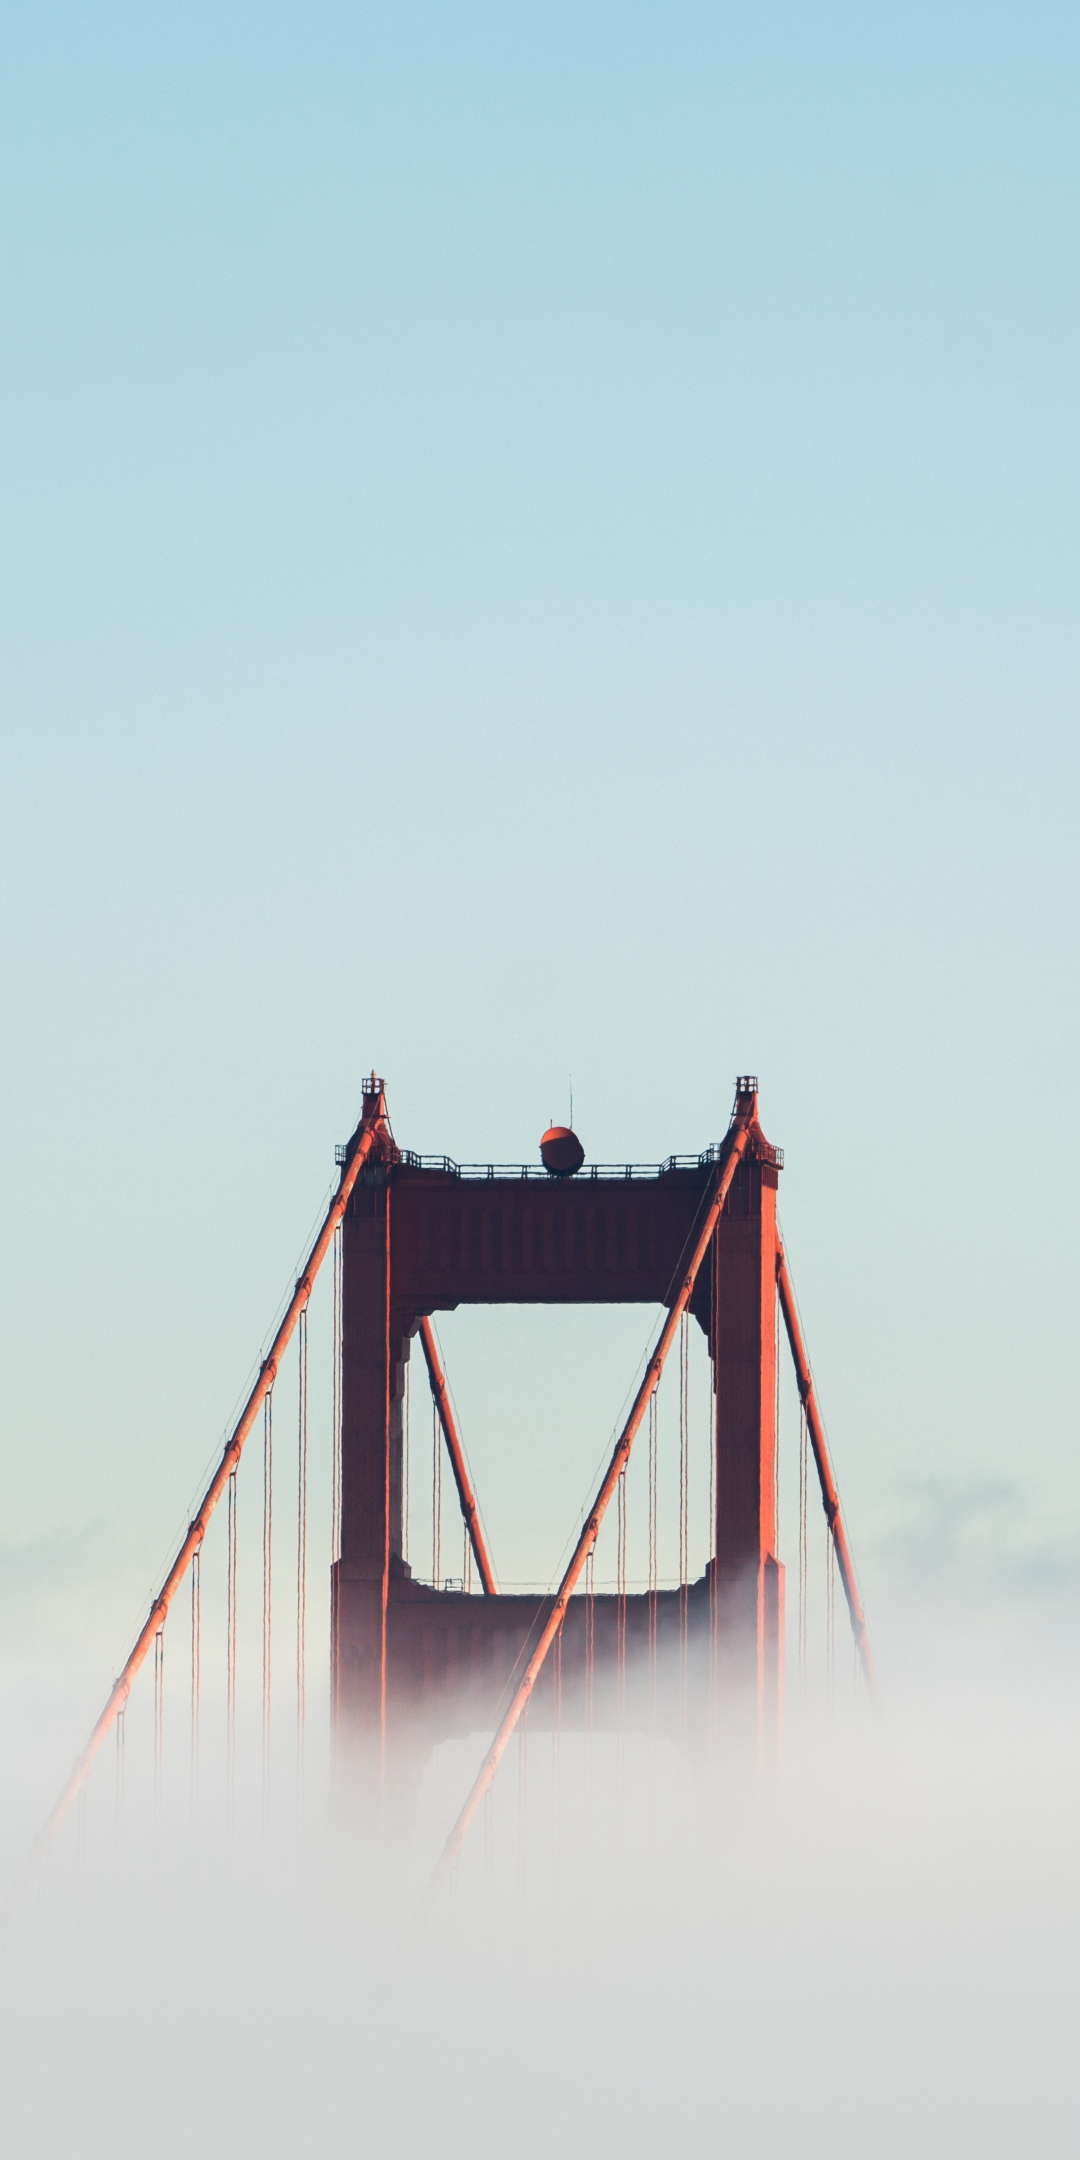 Golden Gate Bridge, fog, bridge, 1080x2160 wallpaper